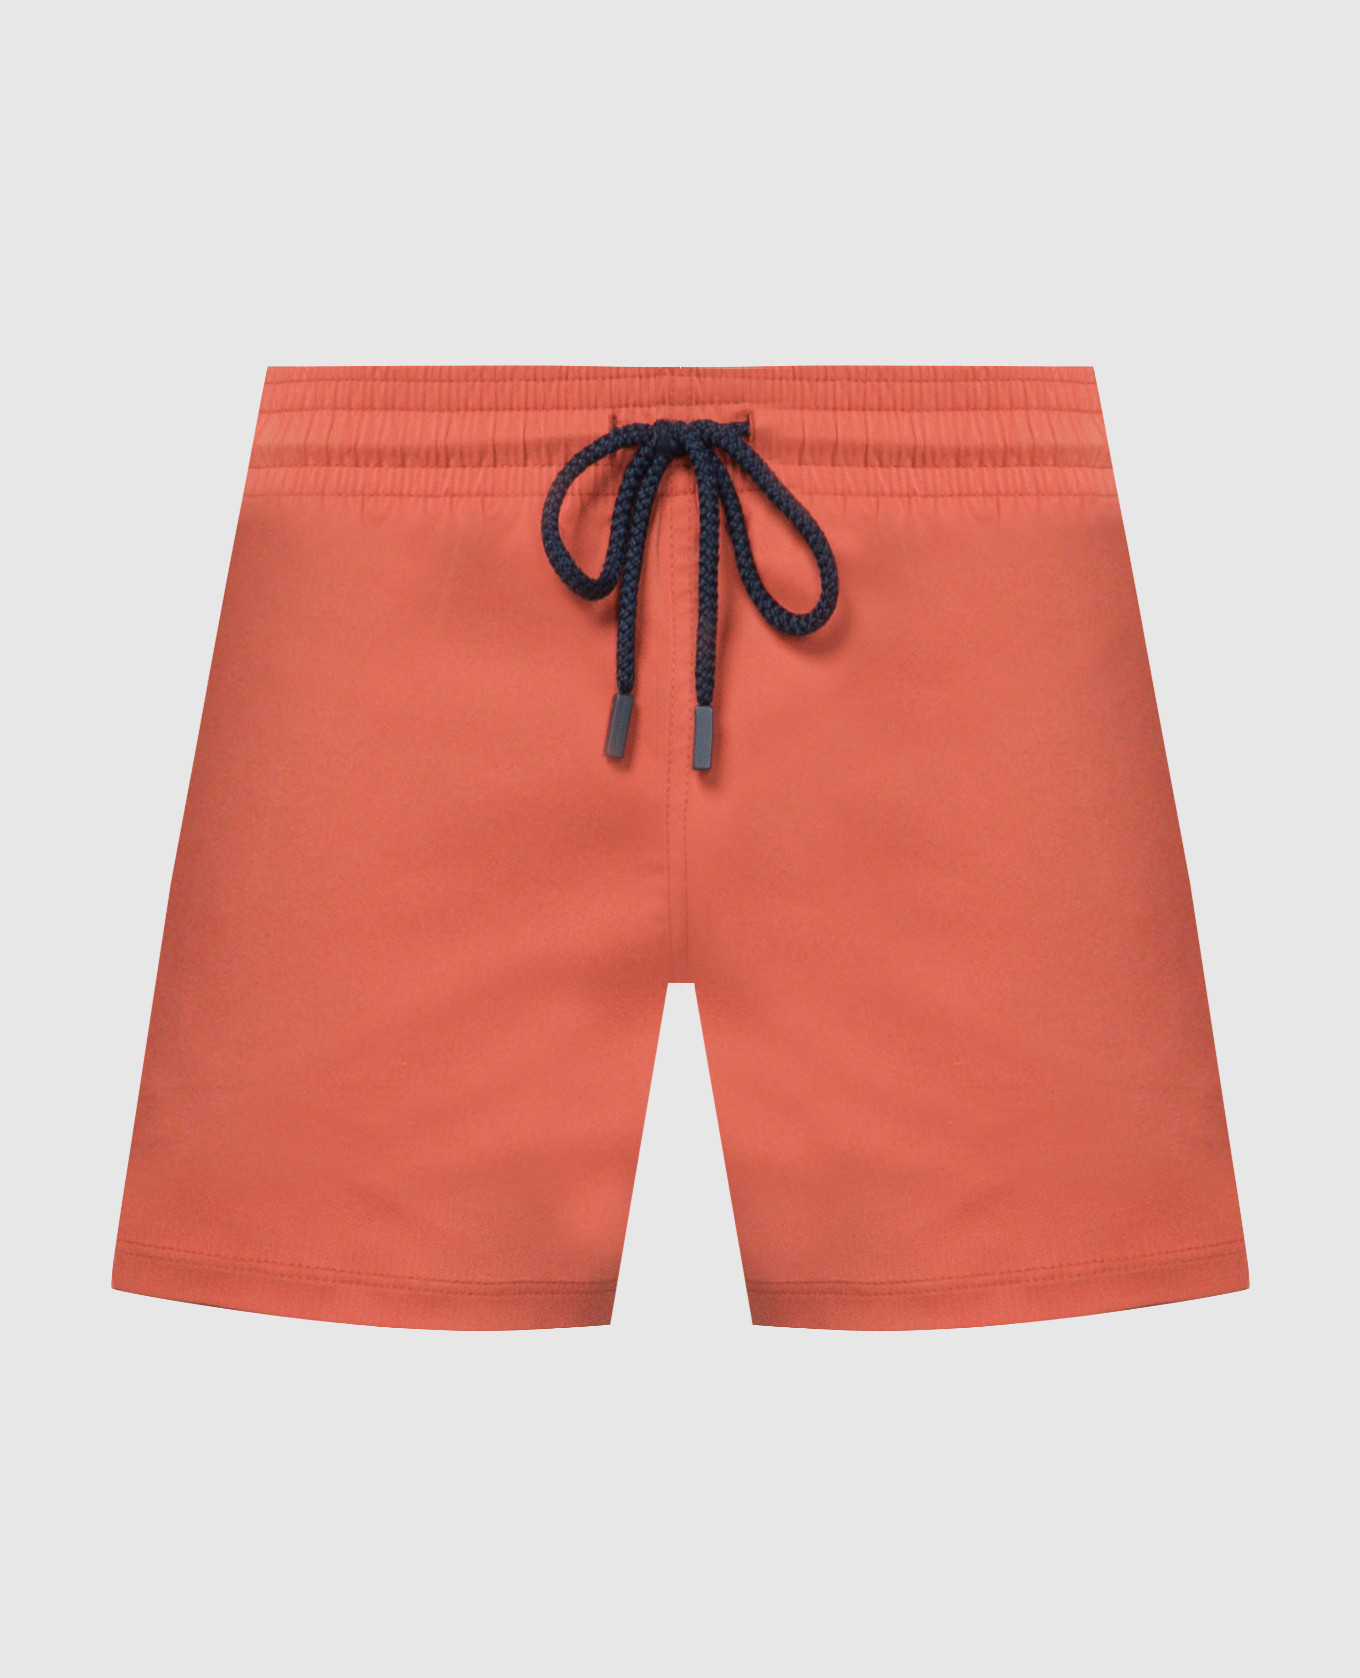 Brown logo swim shorts